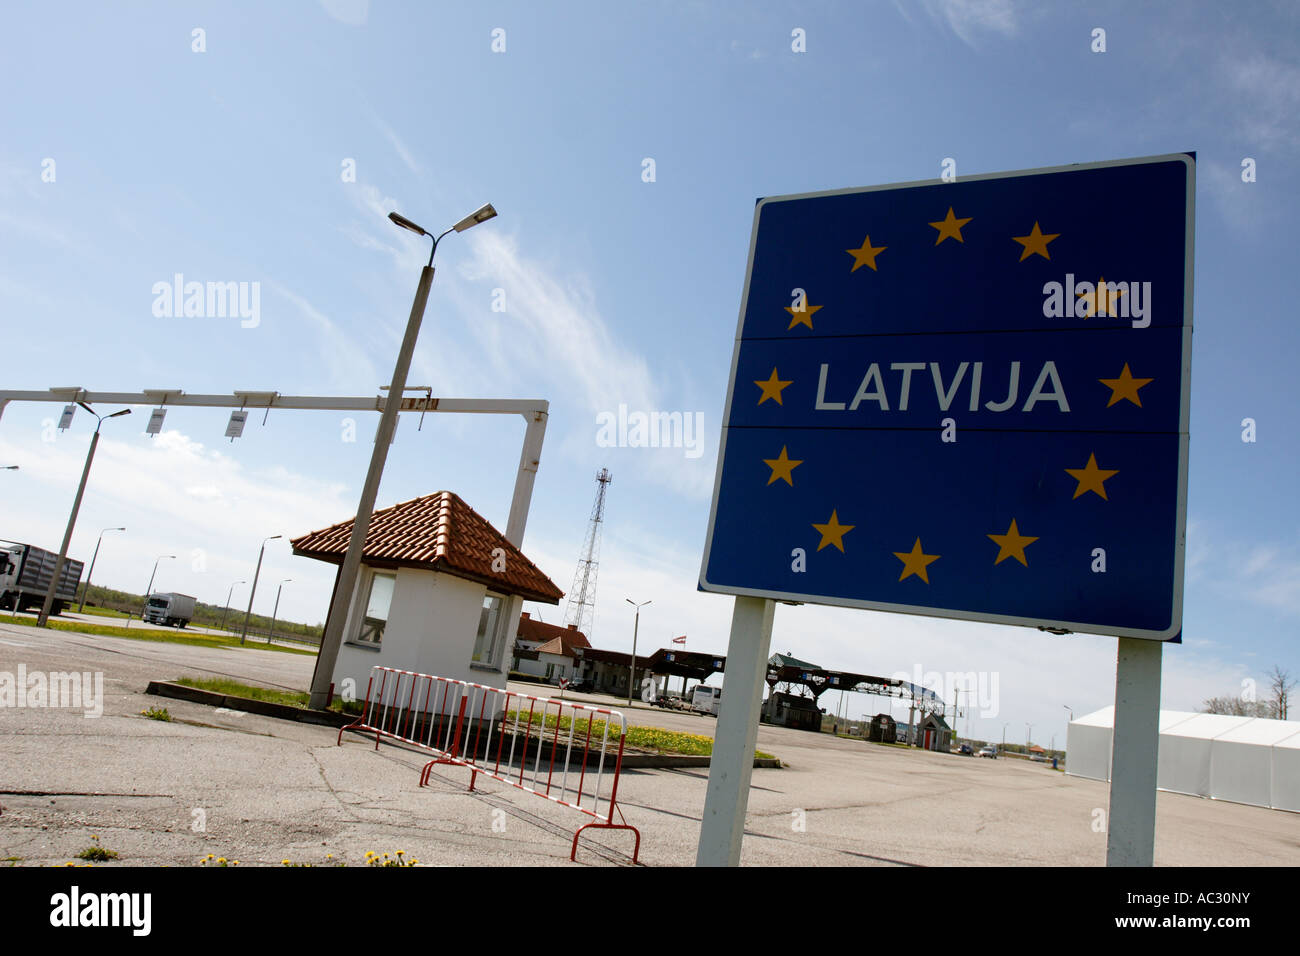 Latvija (Latvia) is seen on a road sign on the estonian-latvian border Stock Photo